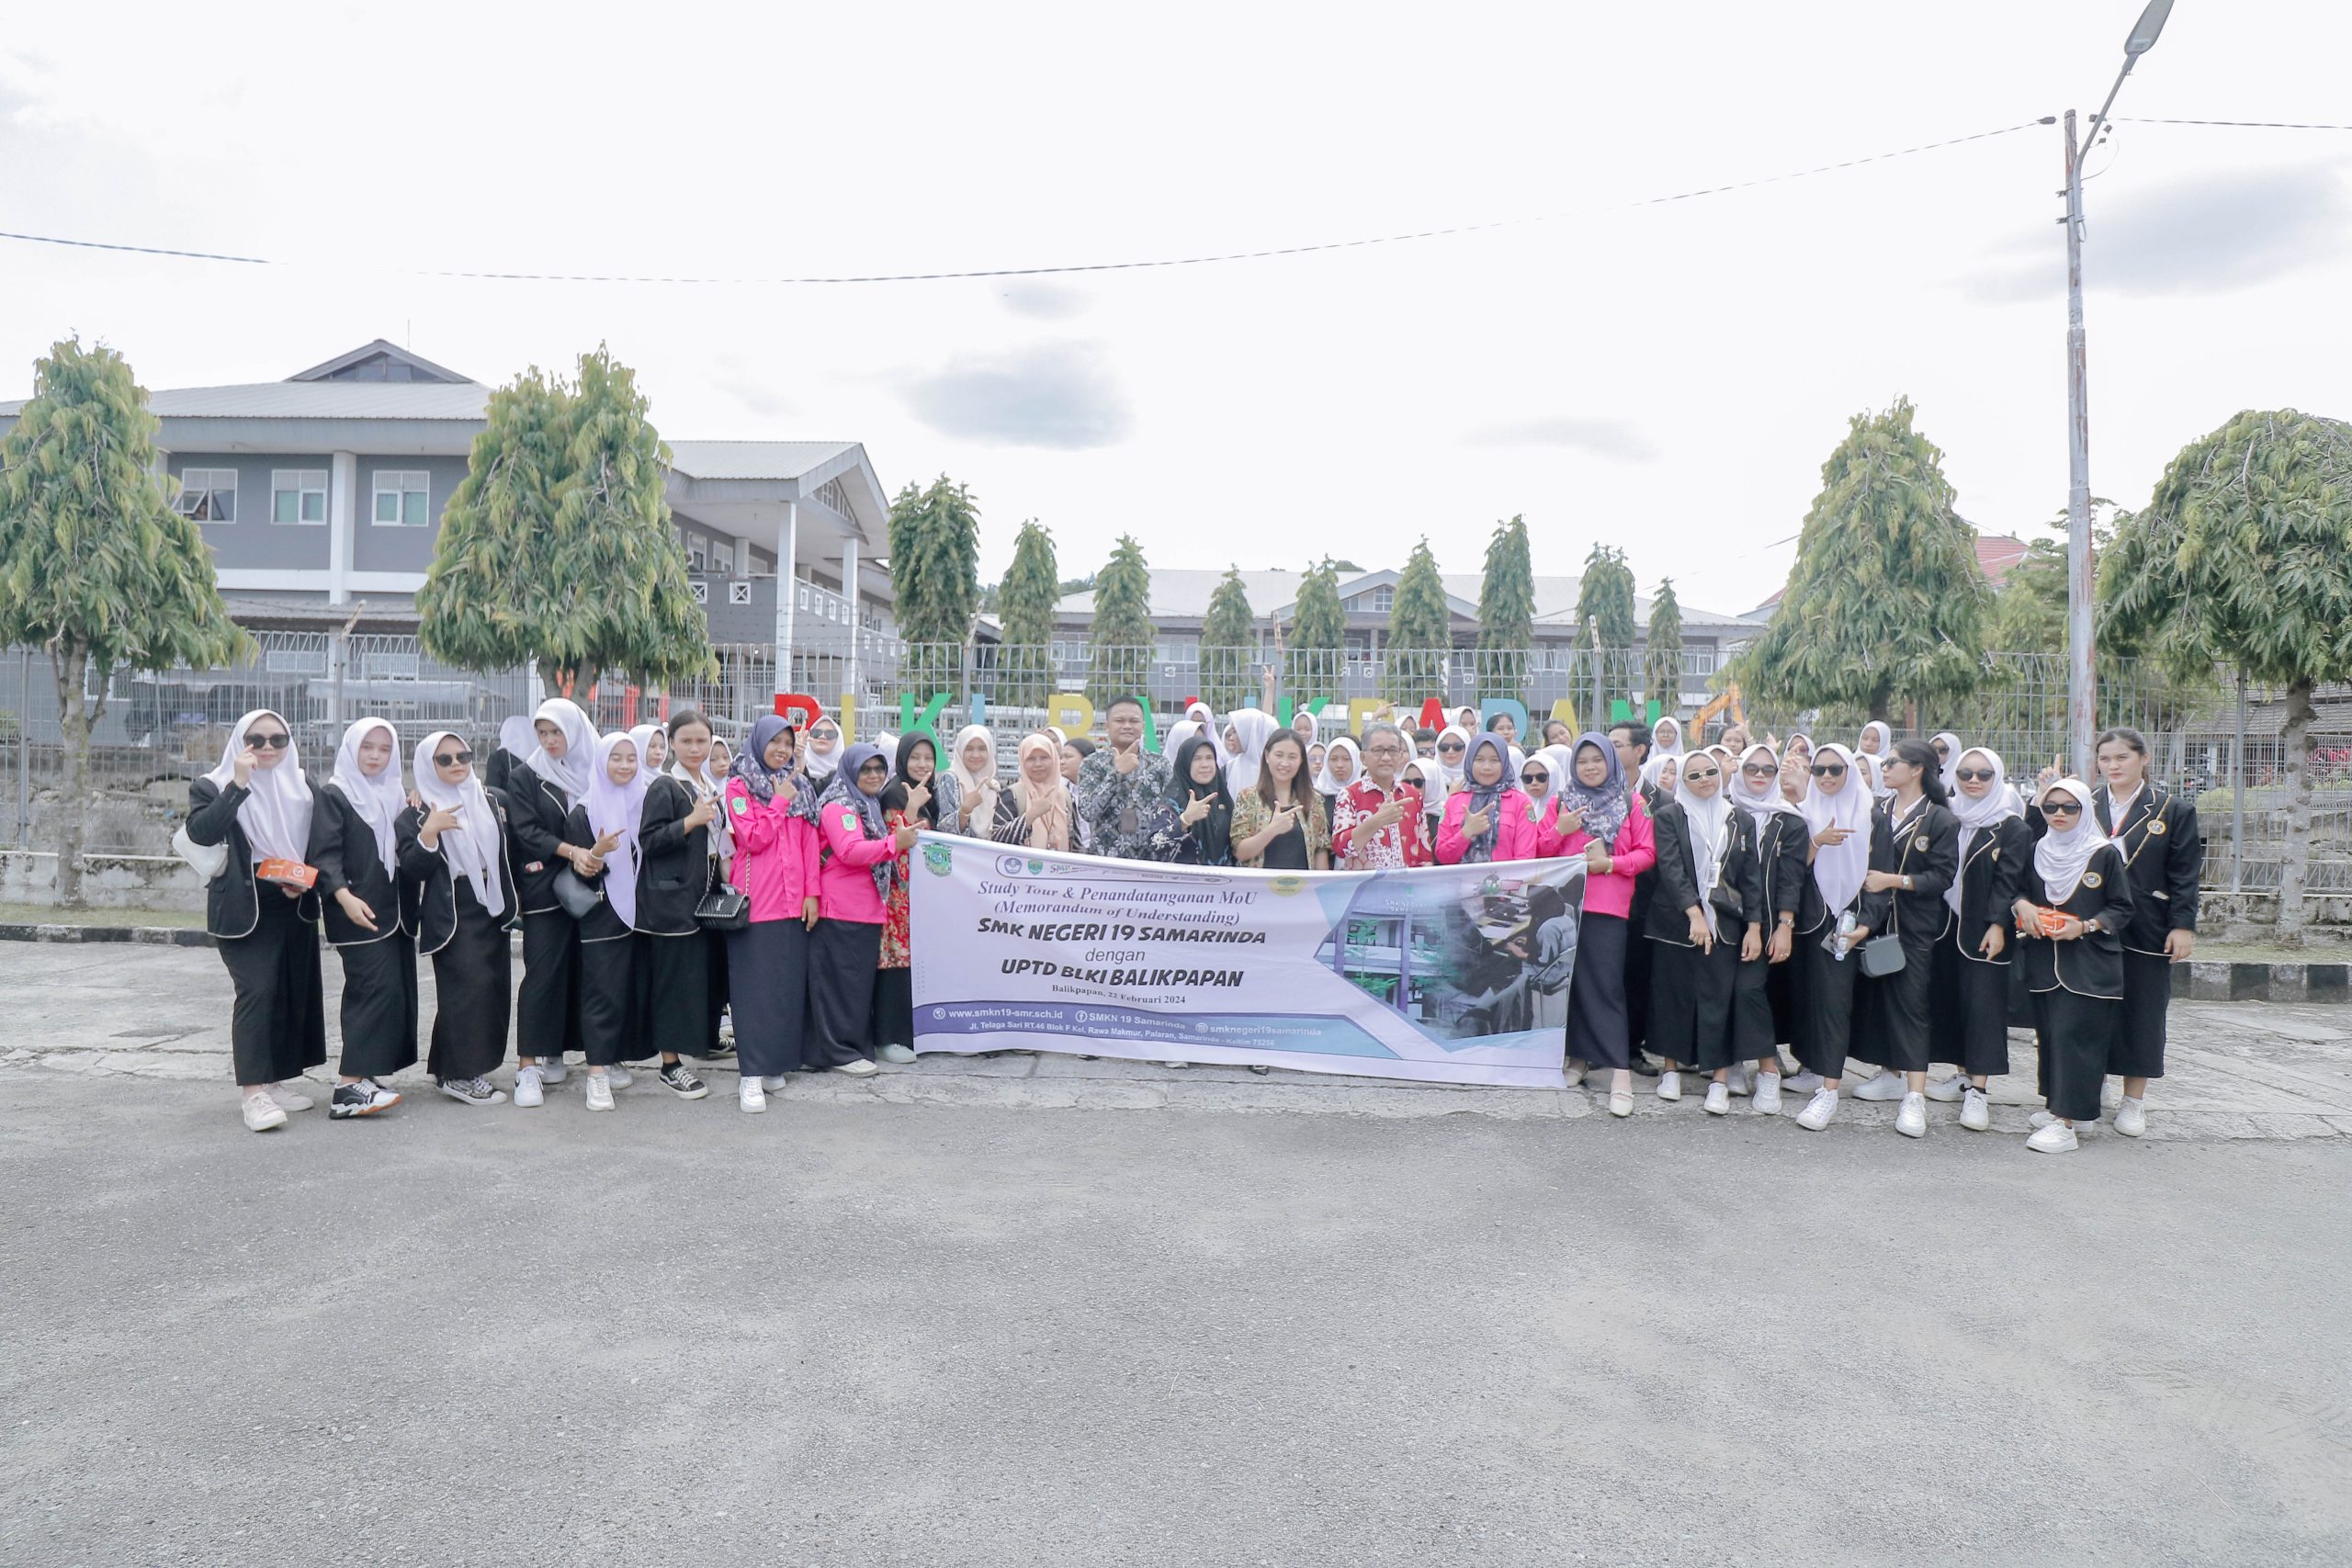 Study Tour dan Kerja Sama Jurusan Akuntansi SMKN 19 Samarinda ke Politeknik Negeri Balikpapan dan BLK Industri Balikpapan